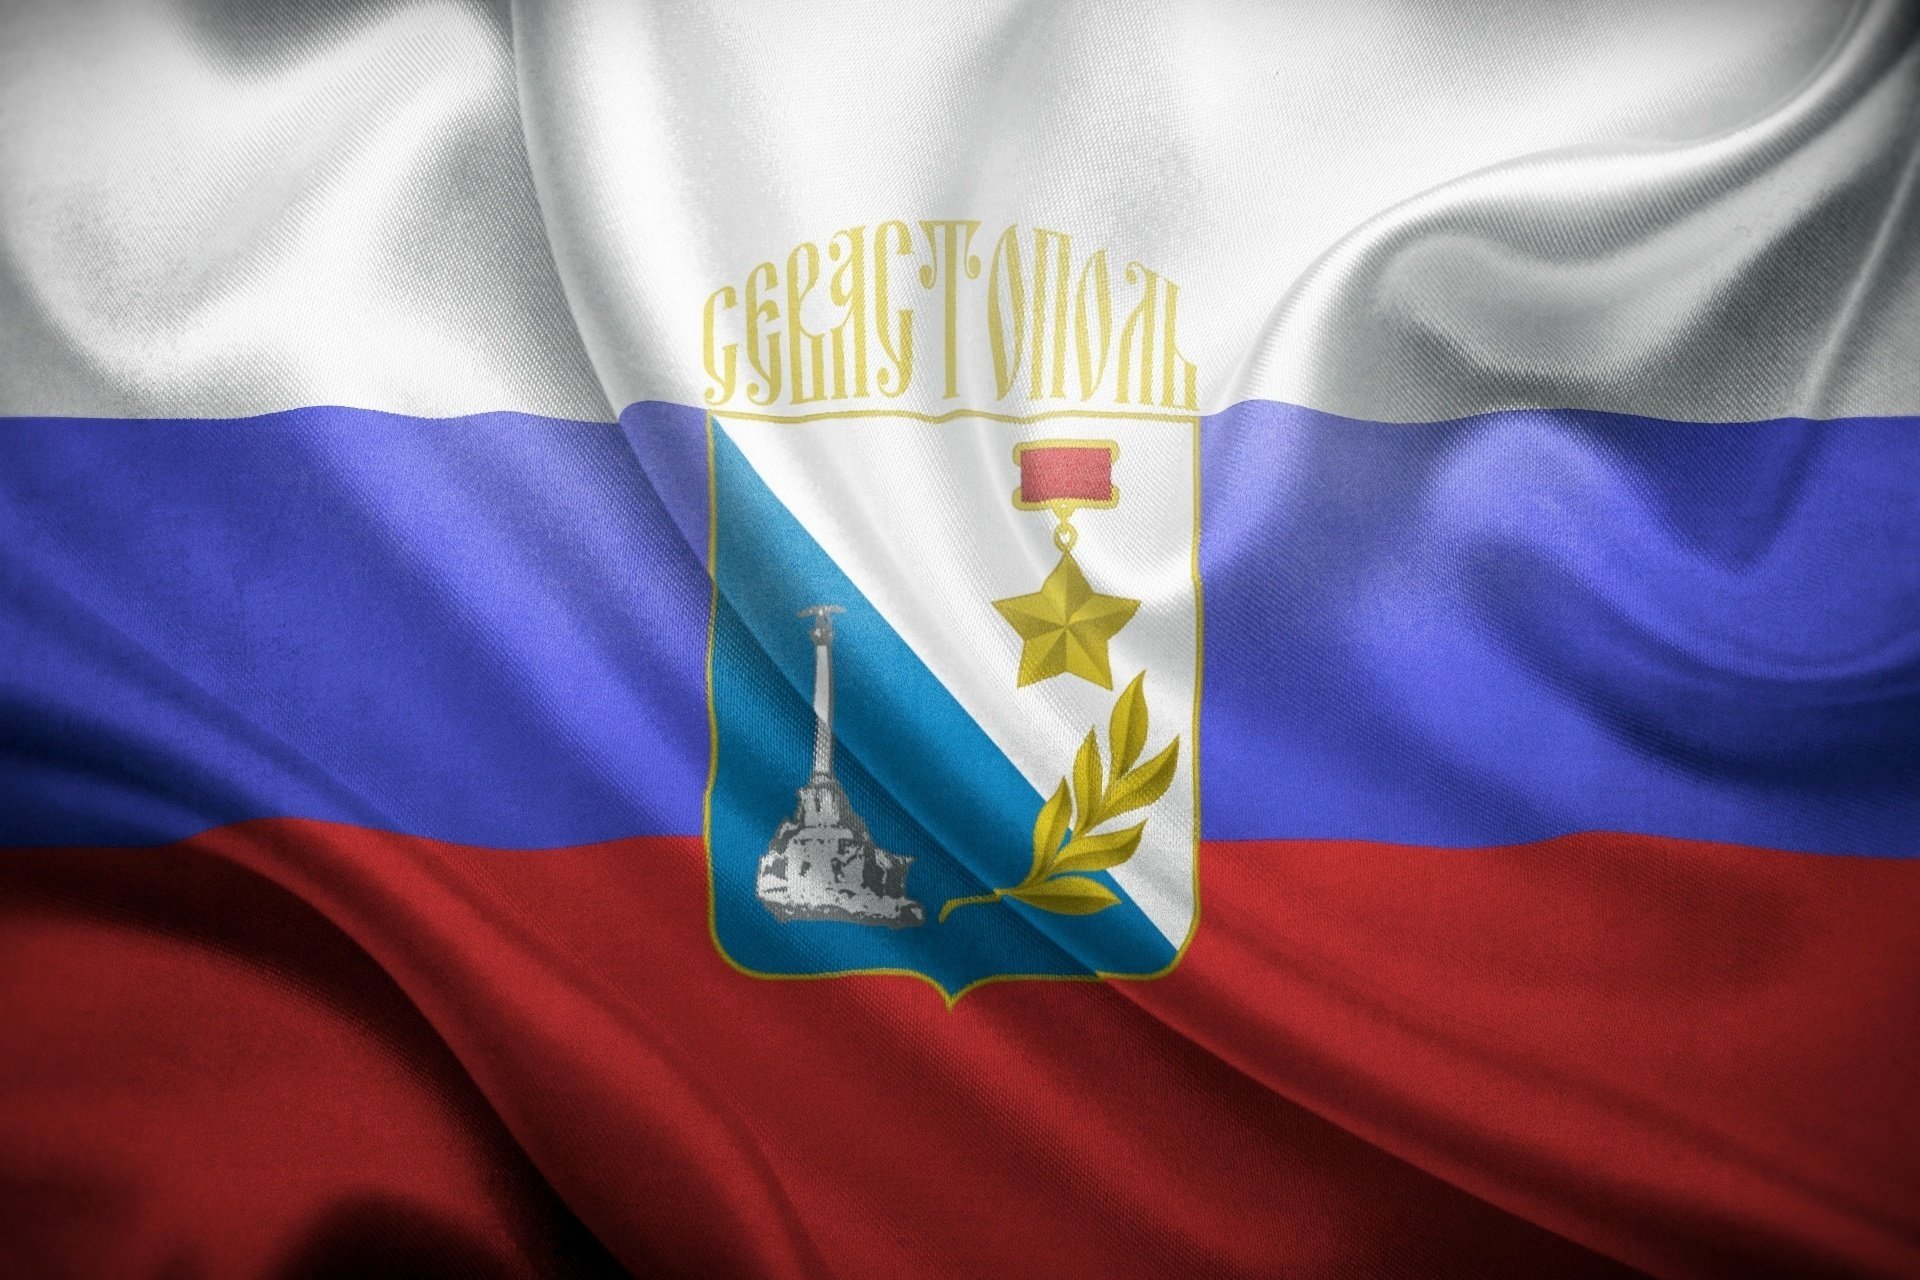 Герб города-героя Севастополя на фоне российского триколора